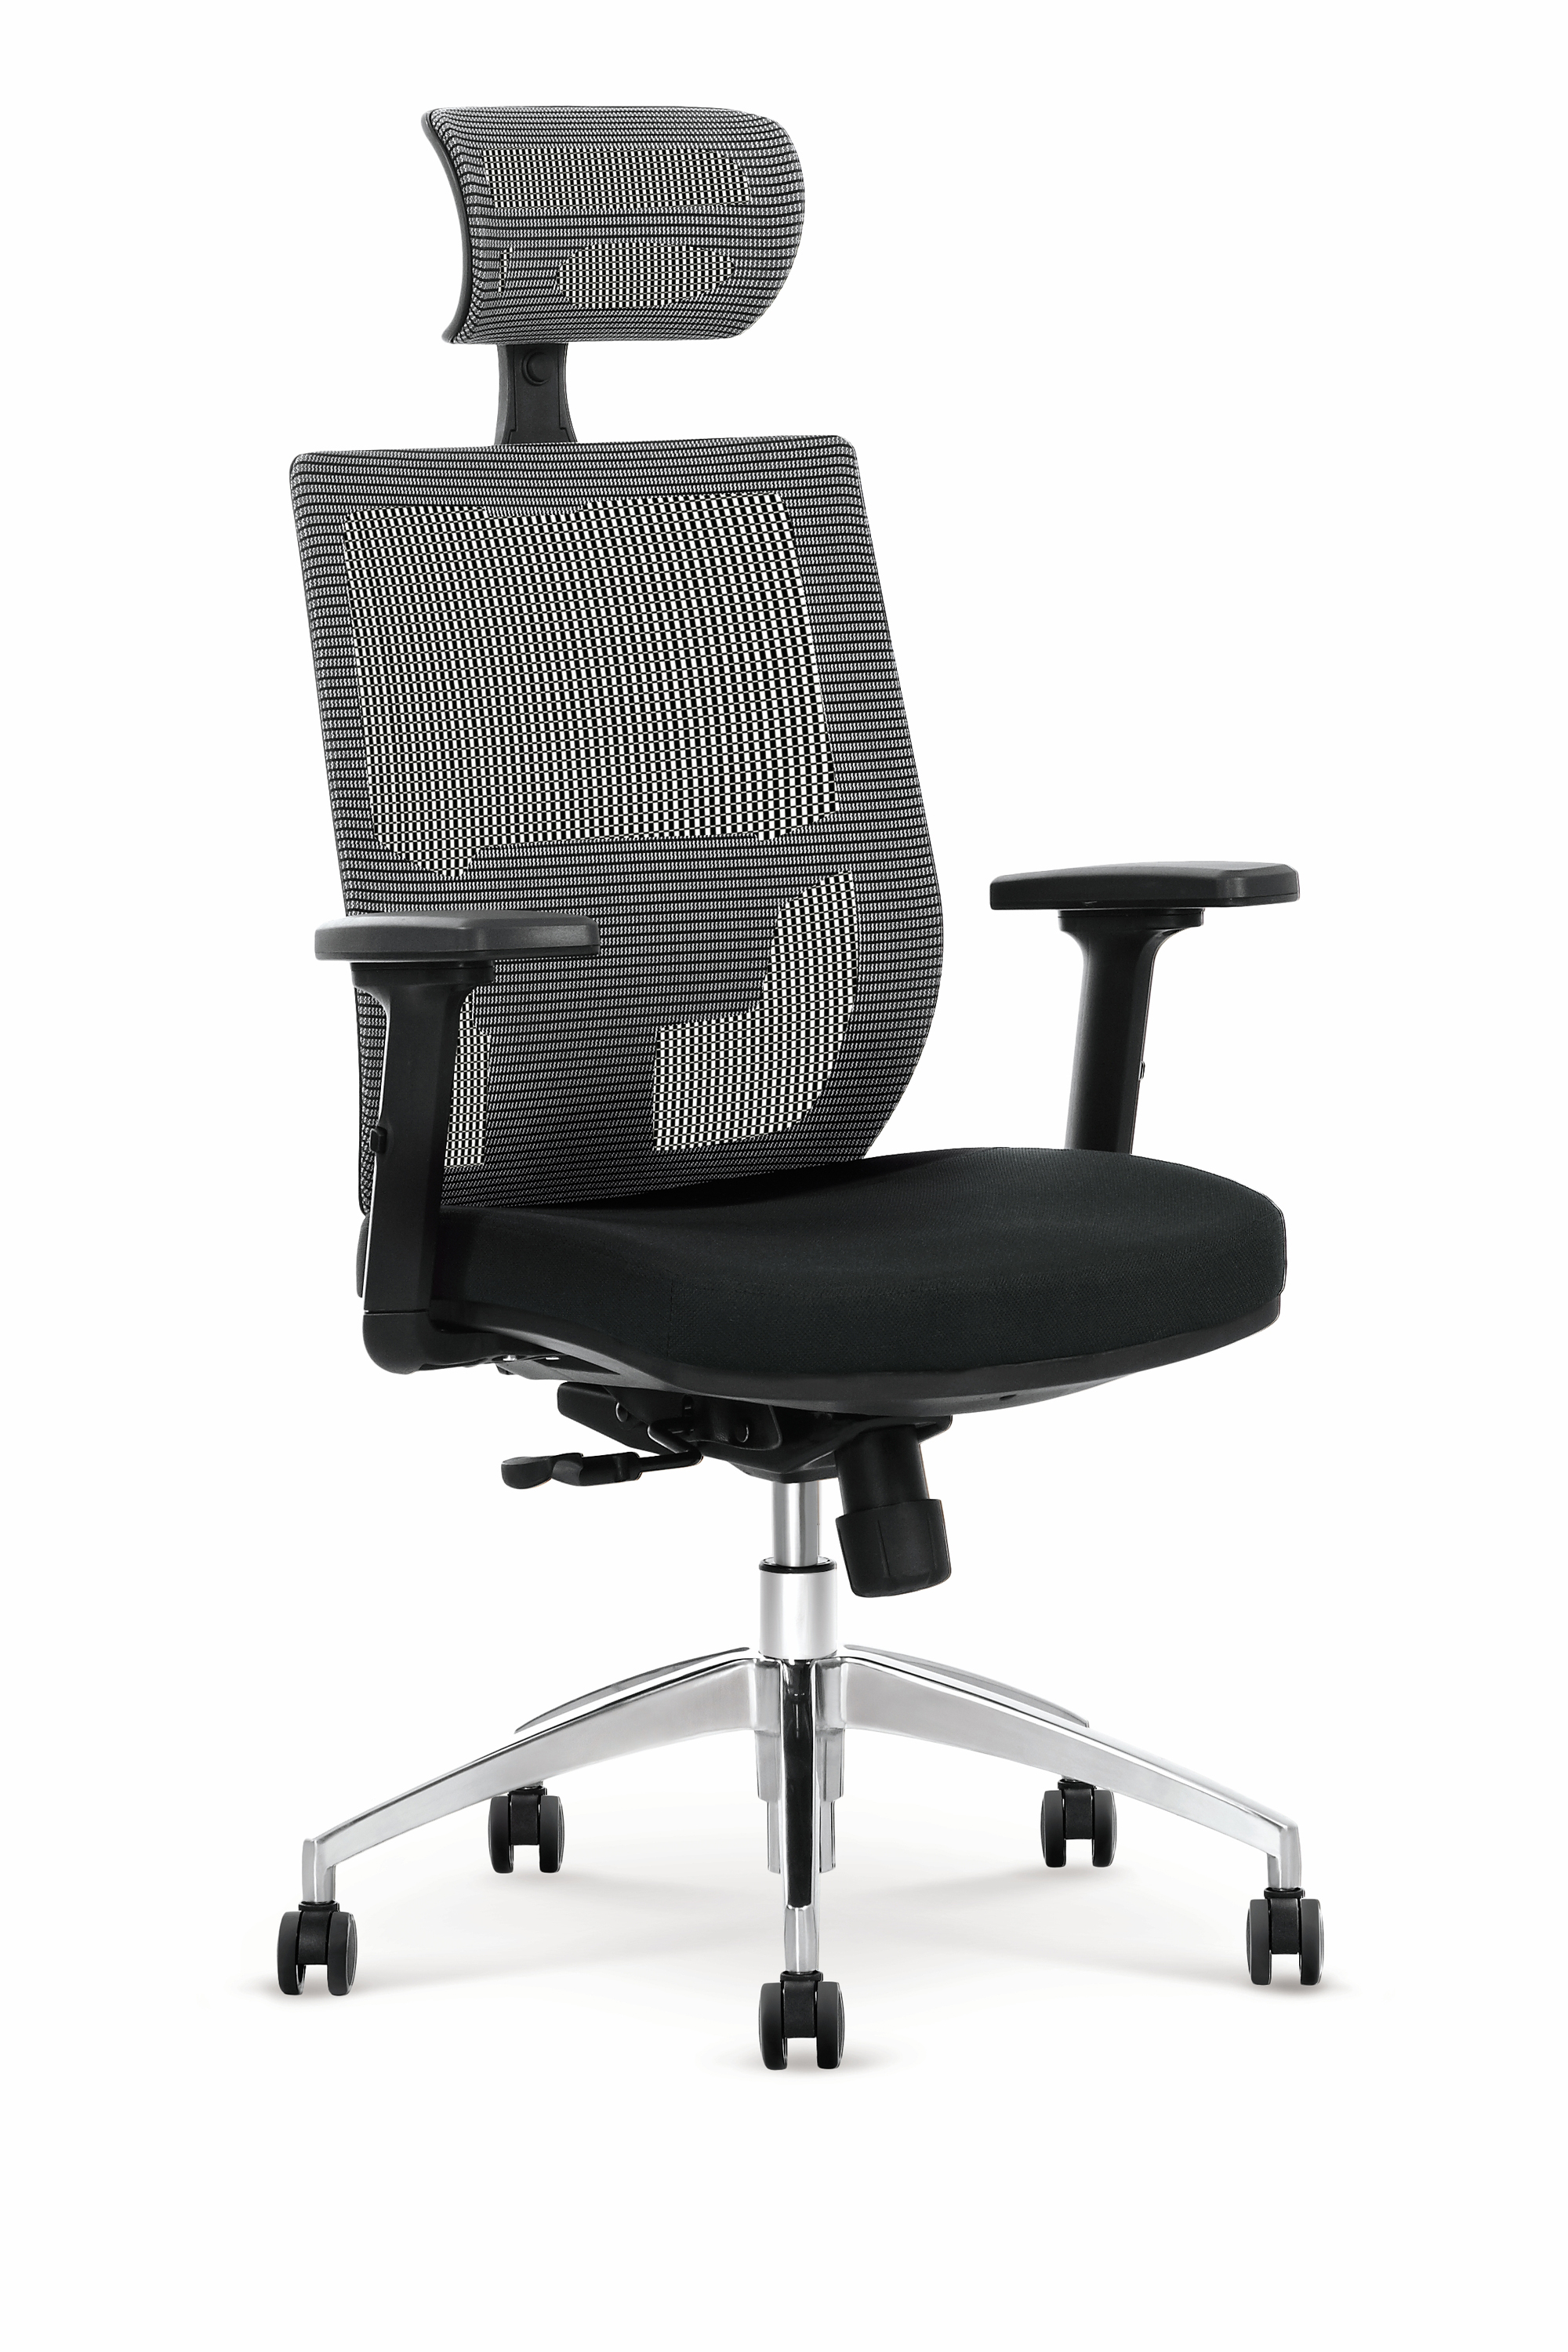 Fotel Admiral firmy Halmar to fotel ergonomiczny premium, który Posiada mechanizm Multiblock, regulowane podłokietniki, podparcie części lędźwiowej, regulowane siedzisko oraz aluminiową podstawę